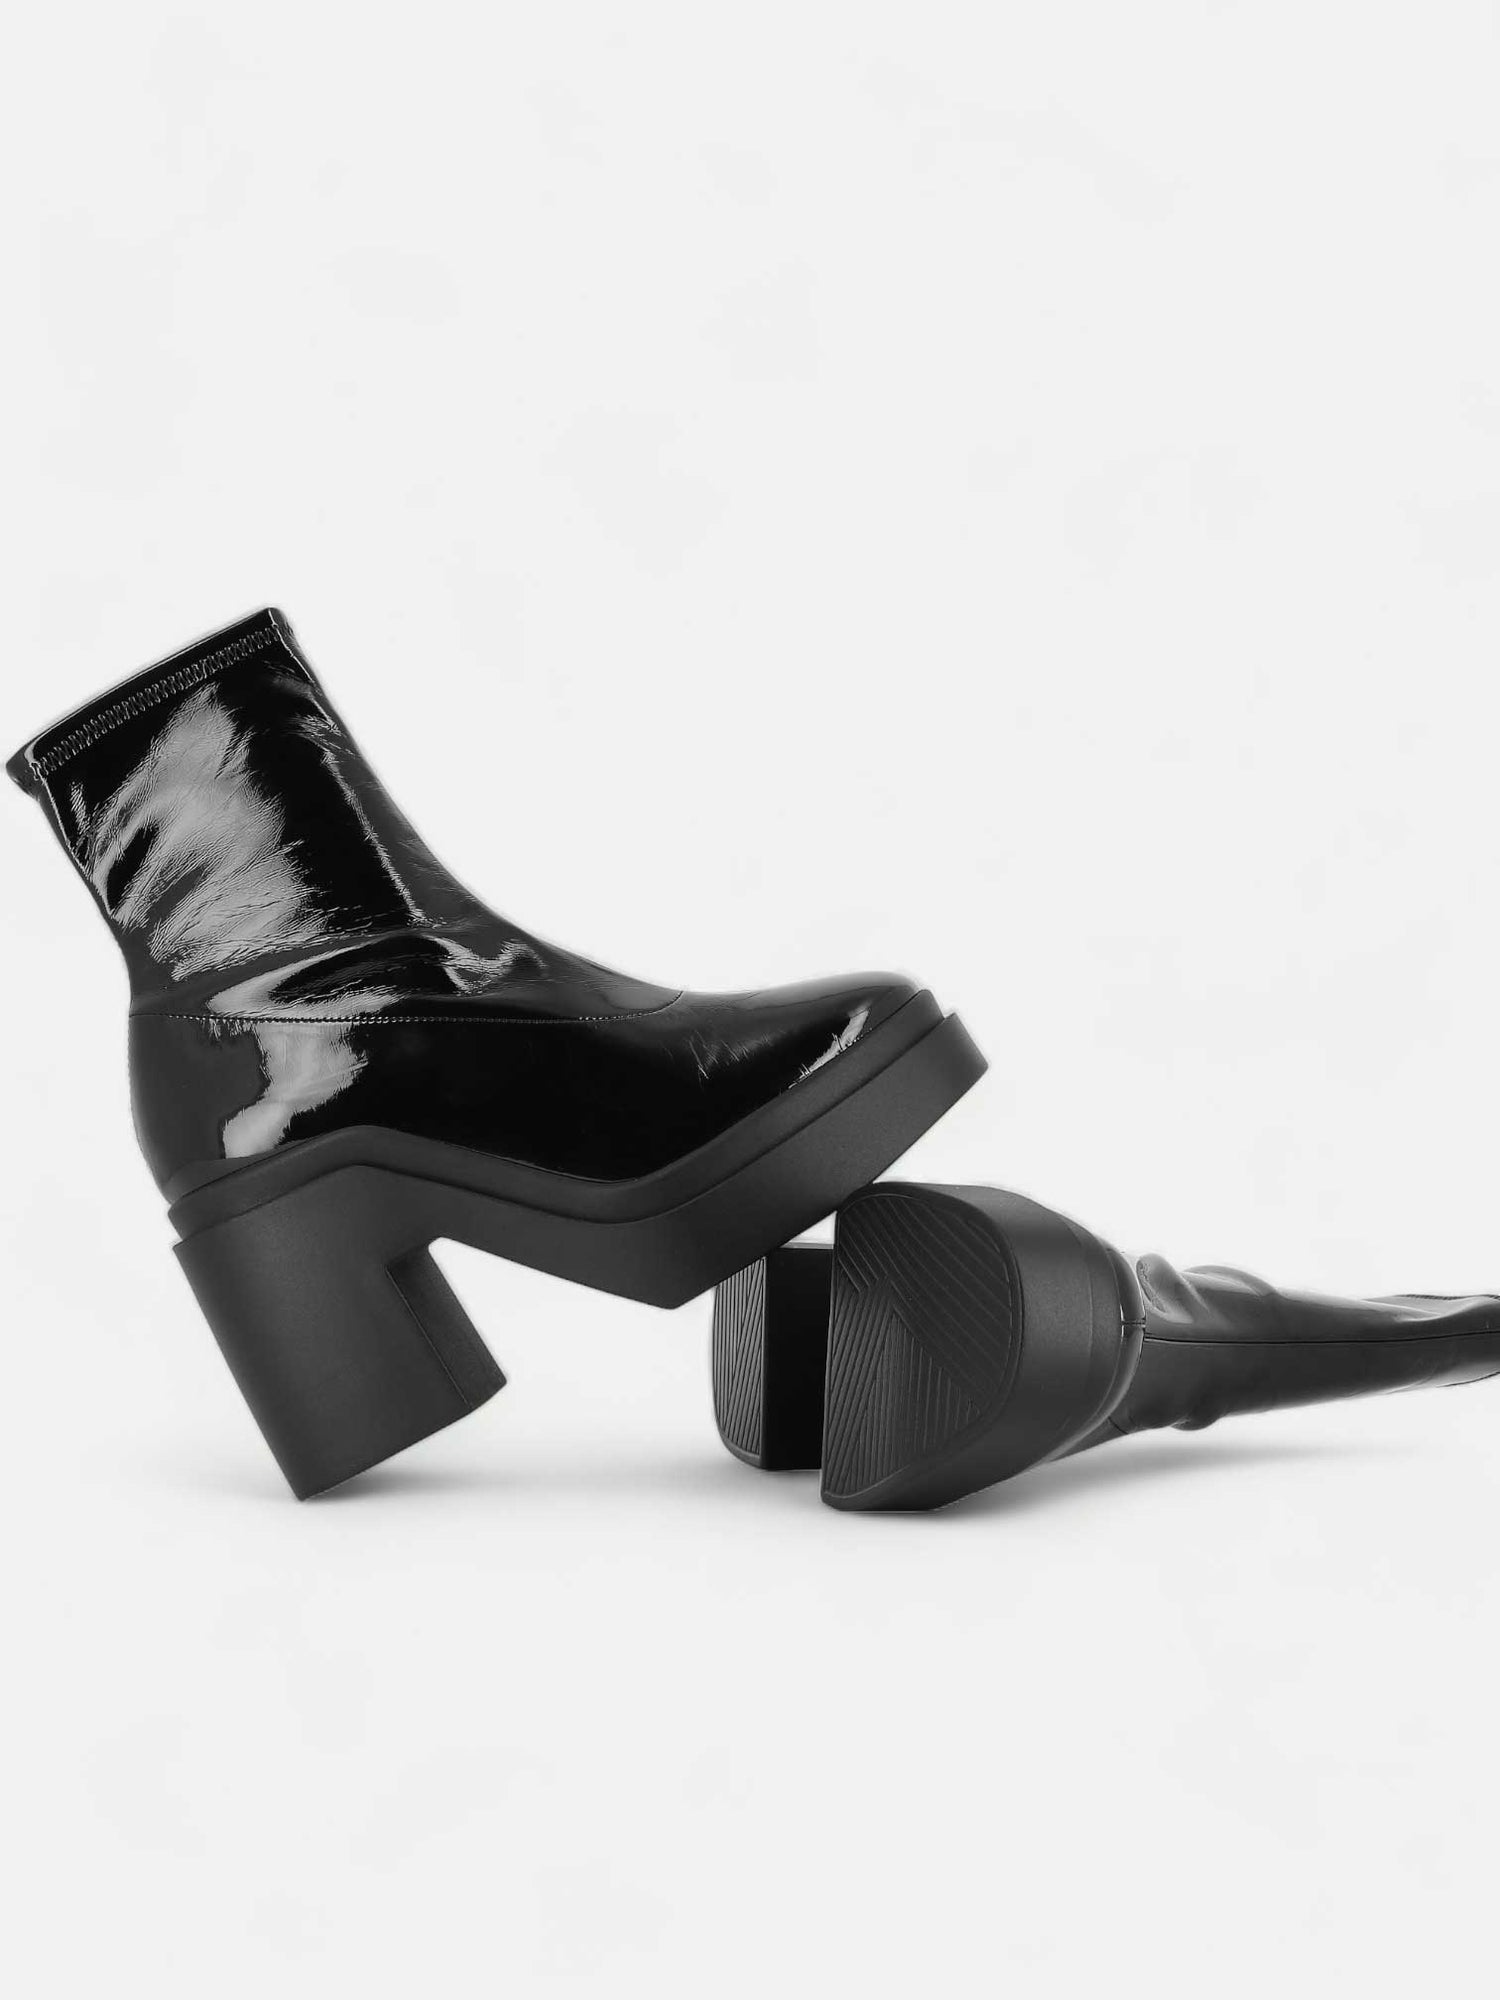 NINA ankle boots, vinyl black || OUTLET